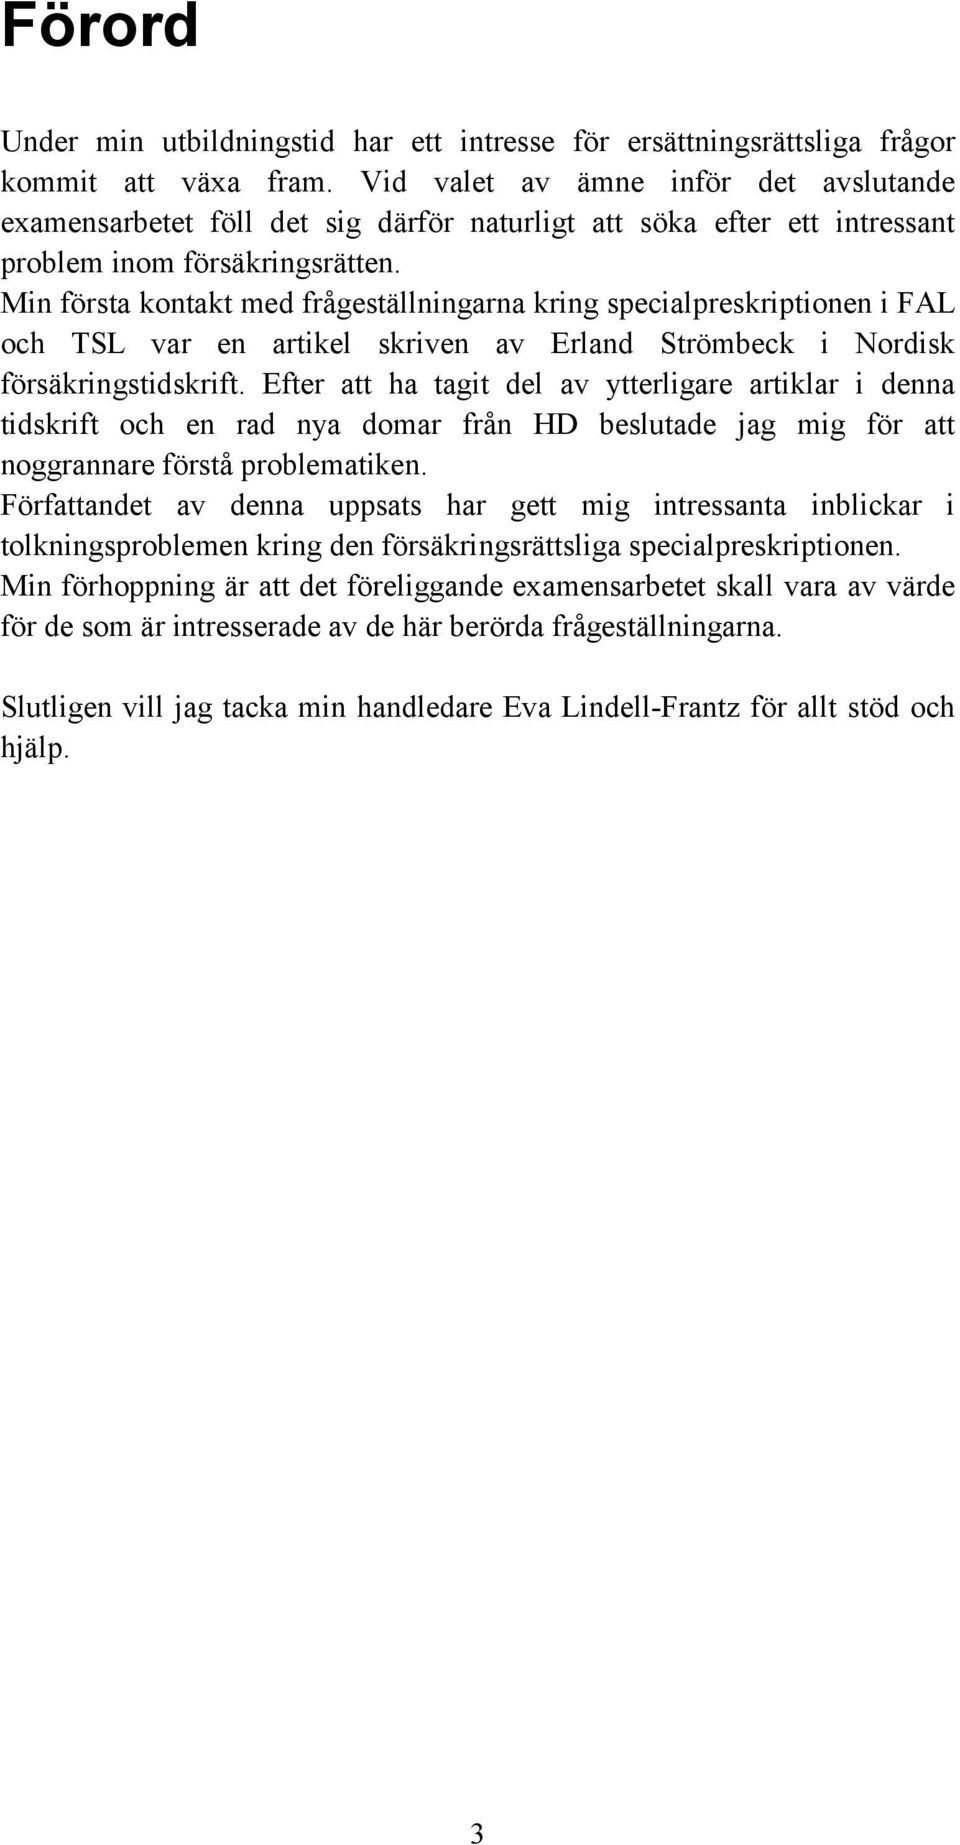 Min första kontakt med frågeställningarna kring specialpreskriptionen i FAL och TSL var en artikel skriven av Erland Strömbeck i Nordisk försäkringstidskrift.